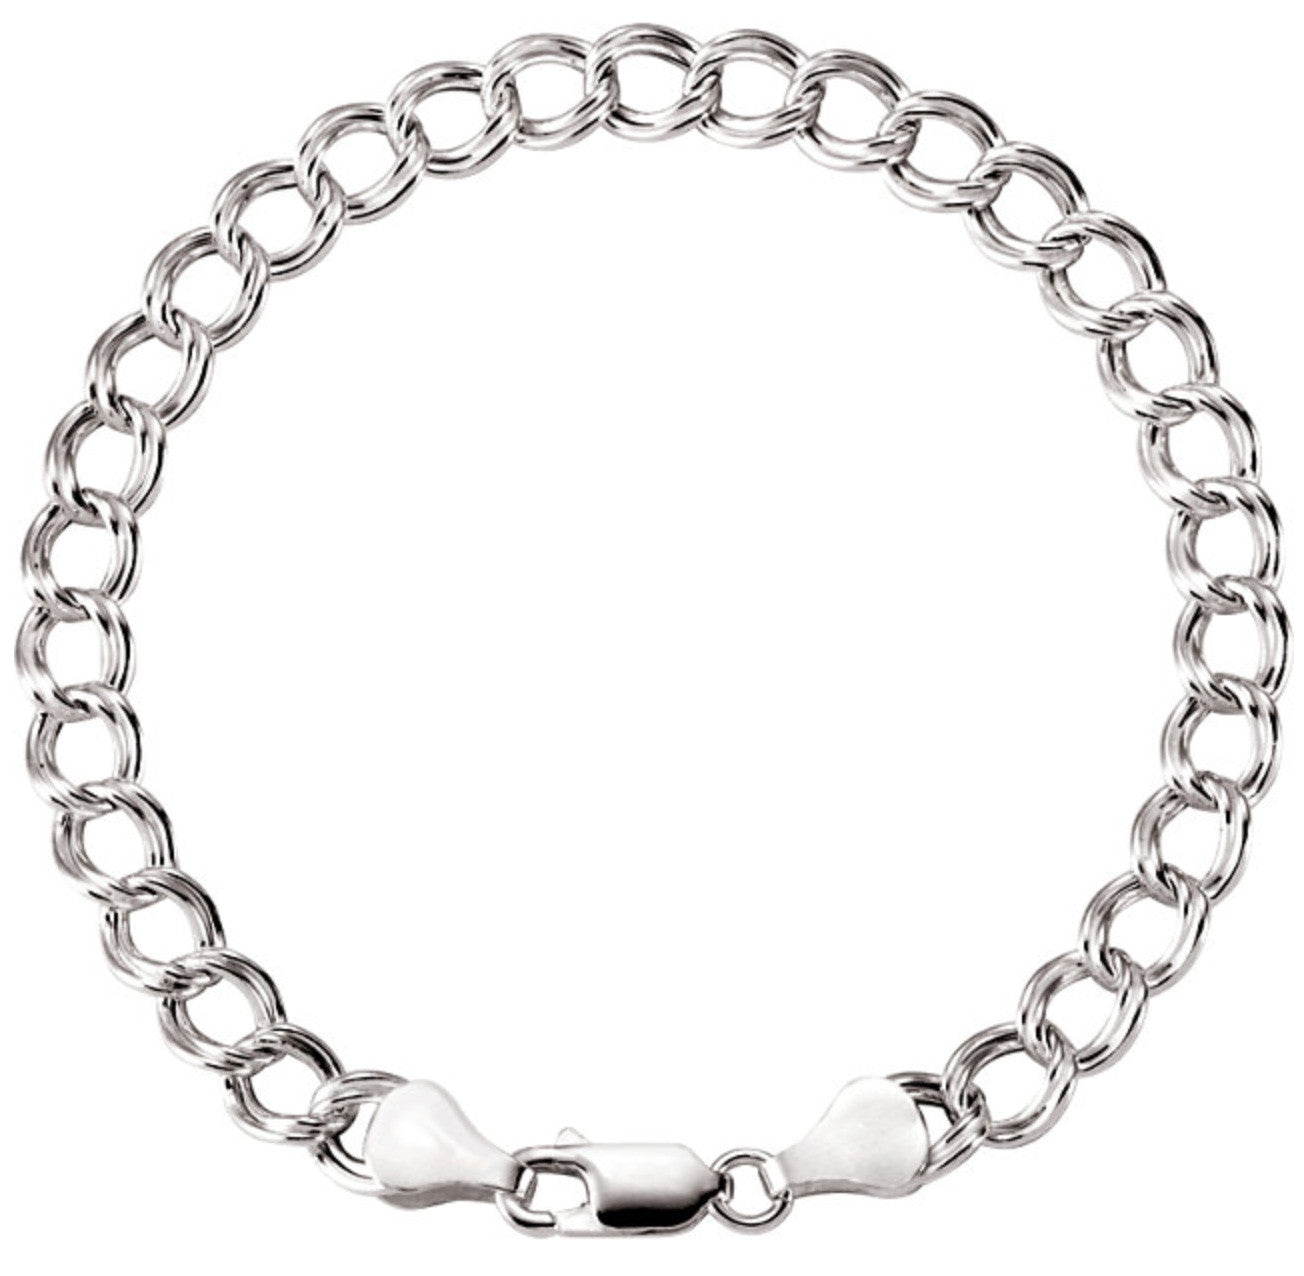 Charm Bracelet Chains